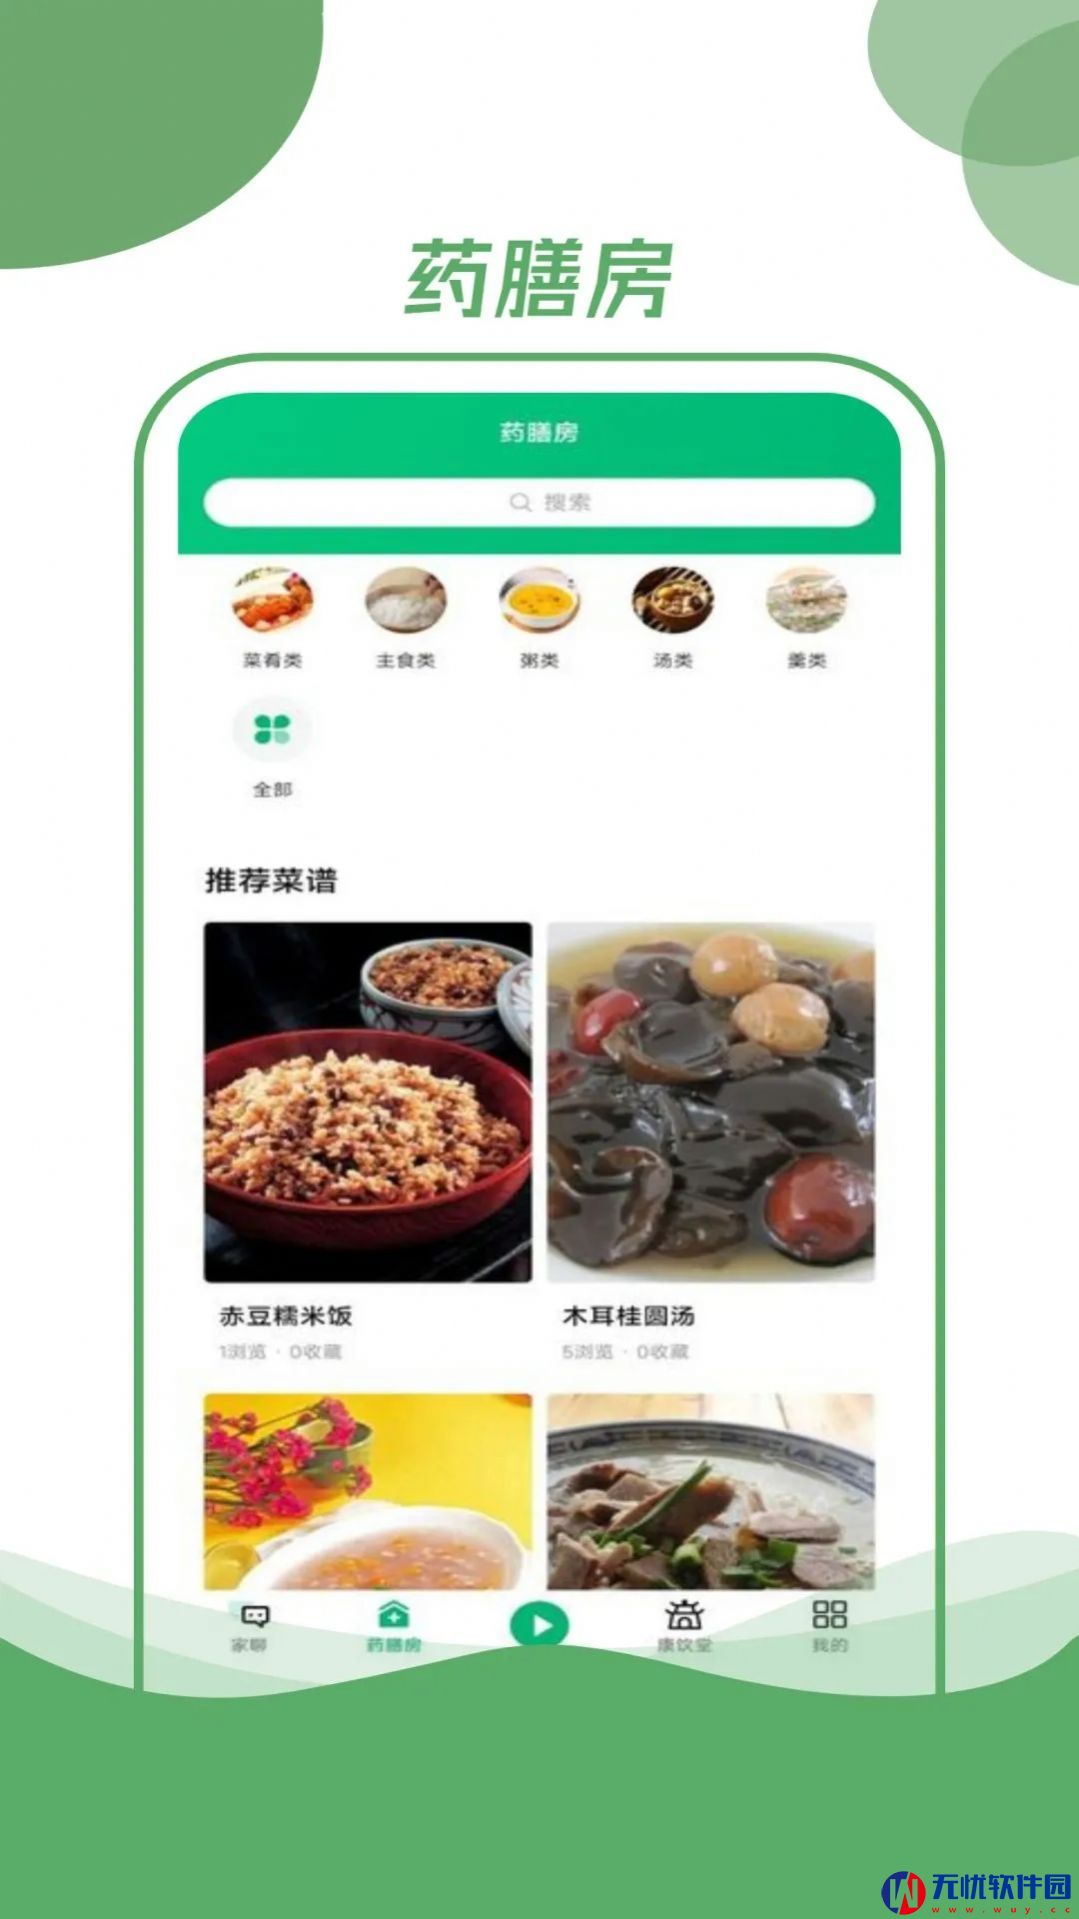 村品药膳坊手机版app图片1